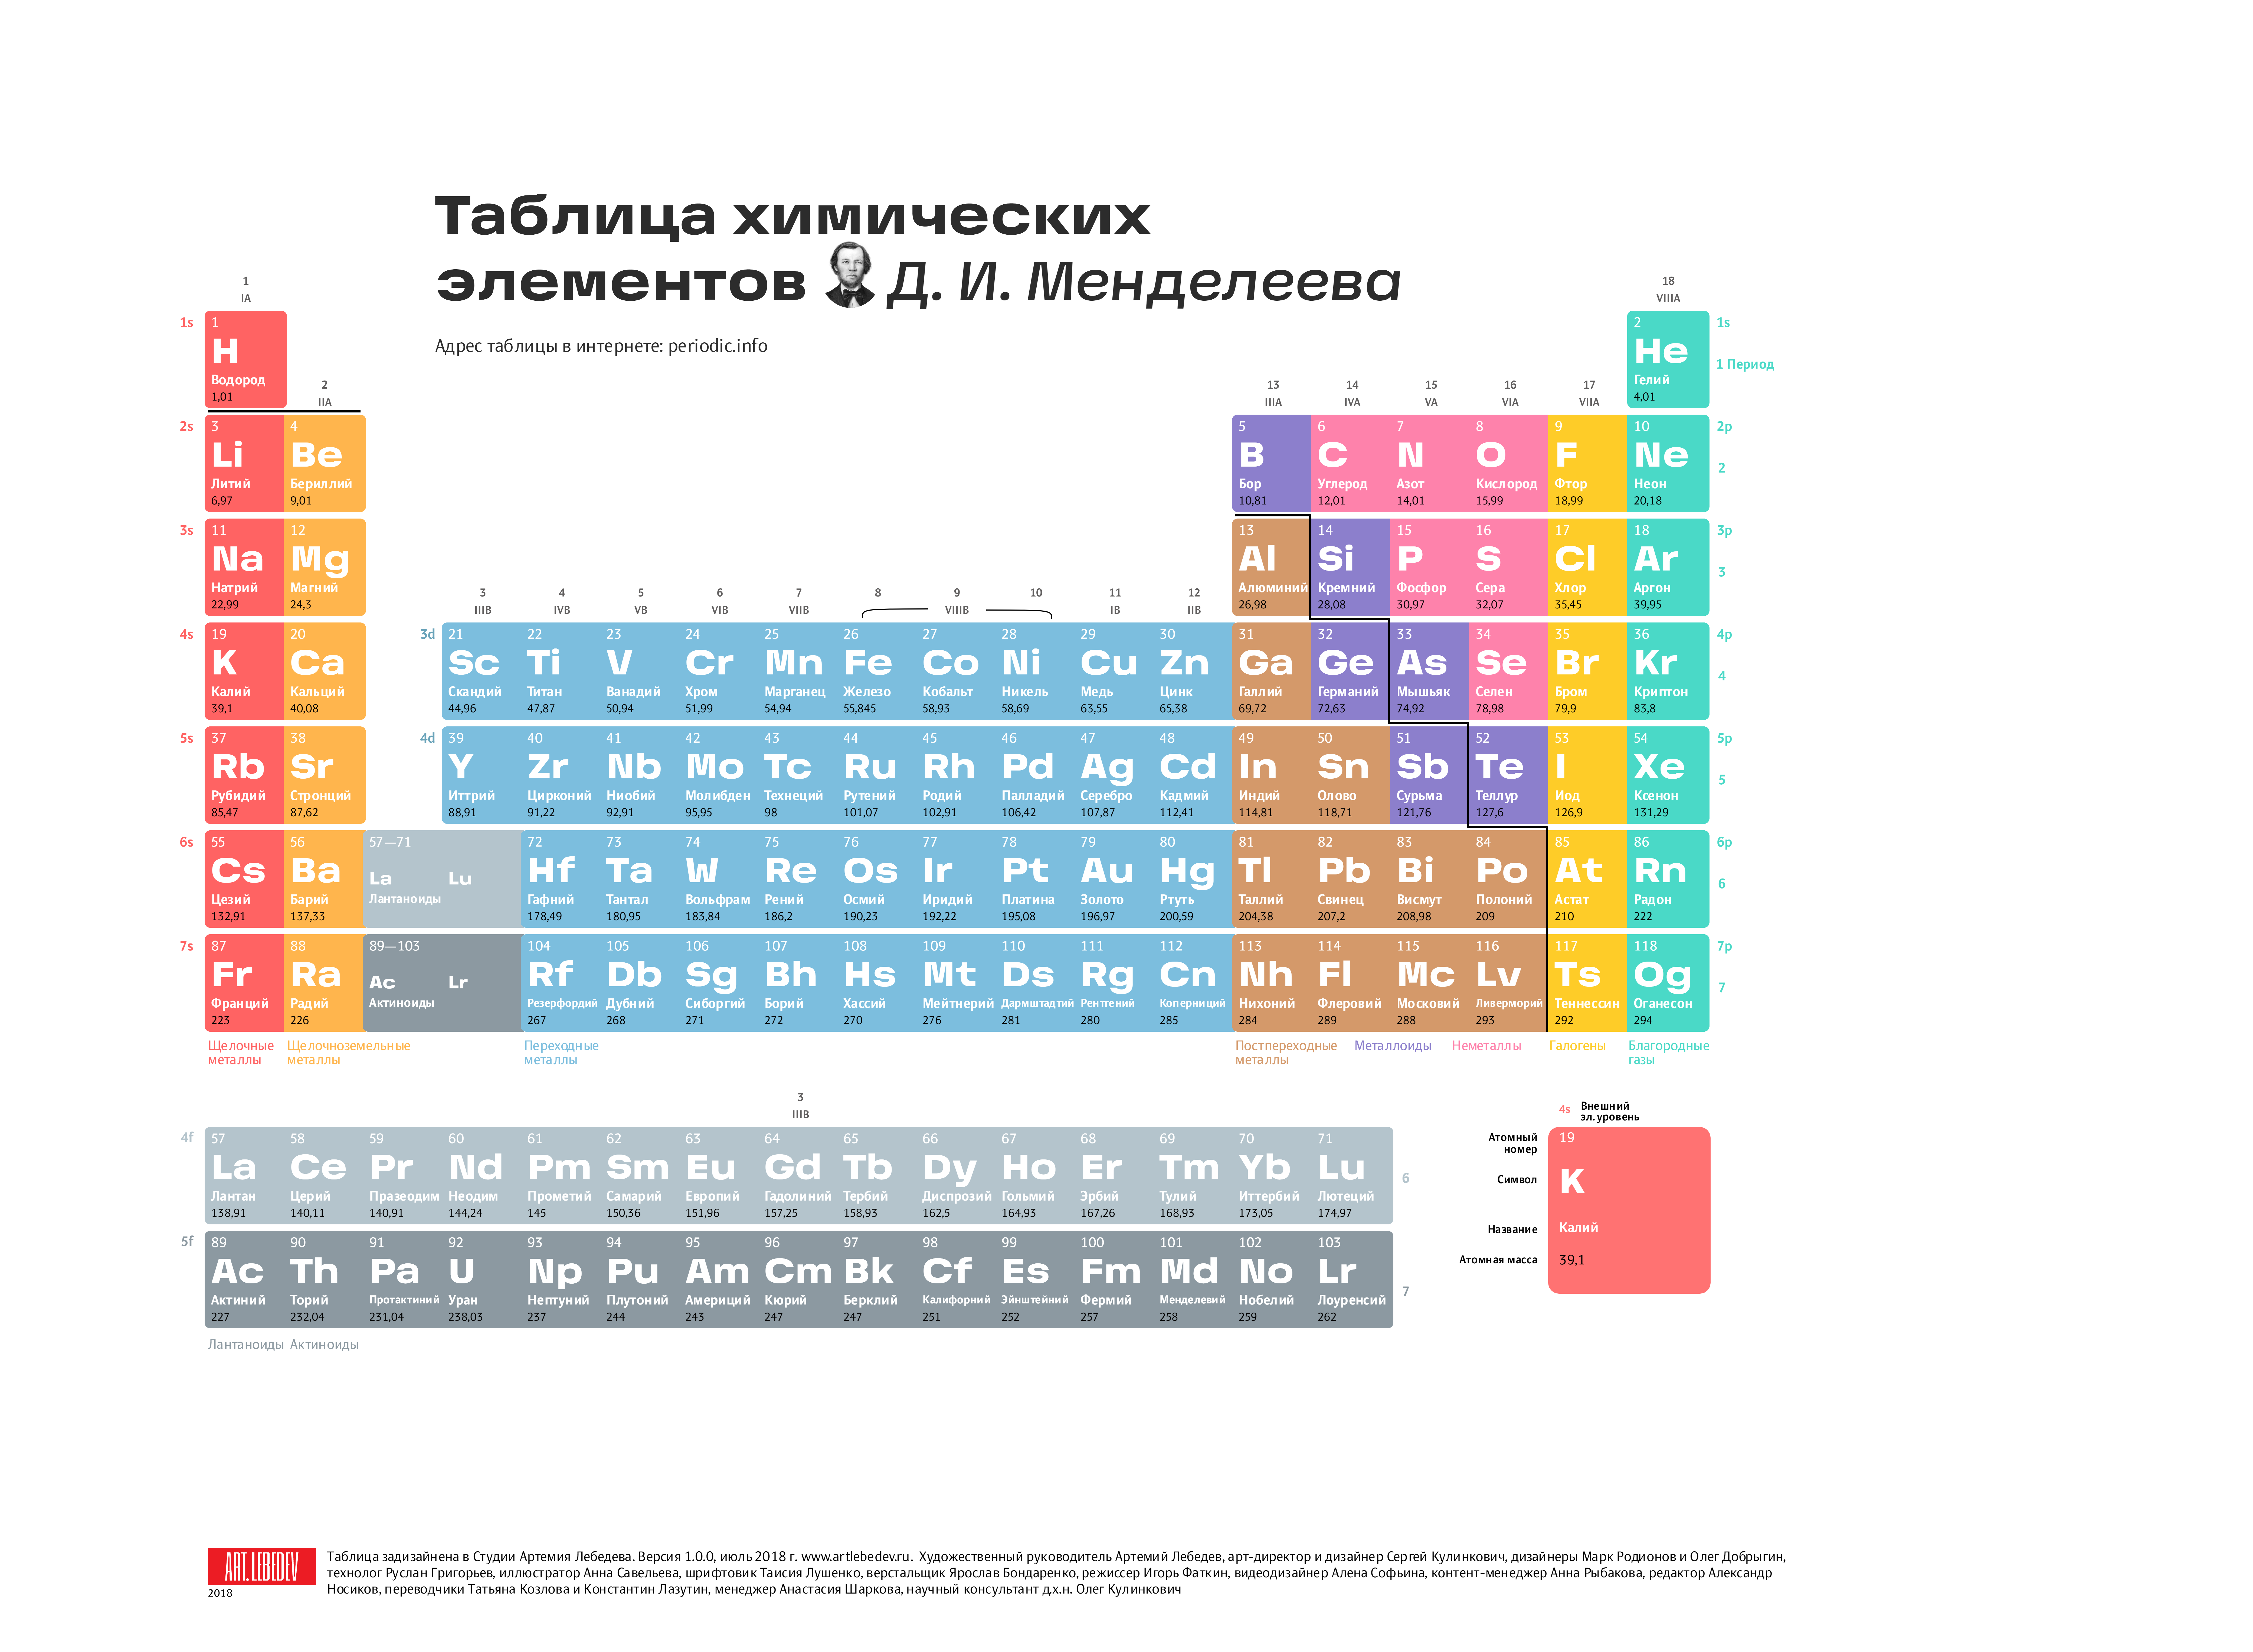 Химия 8 класс 20 элементов. Современная таблица Менделеева 118 элементов. Длиннопериодный вариант таблицы Менделеева. Первые 20 элементов таблицы Менделеева. Химия просто таблица Менделеева 2.0.